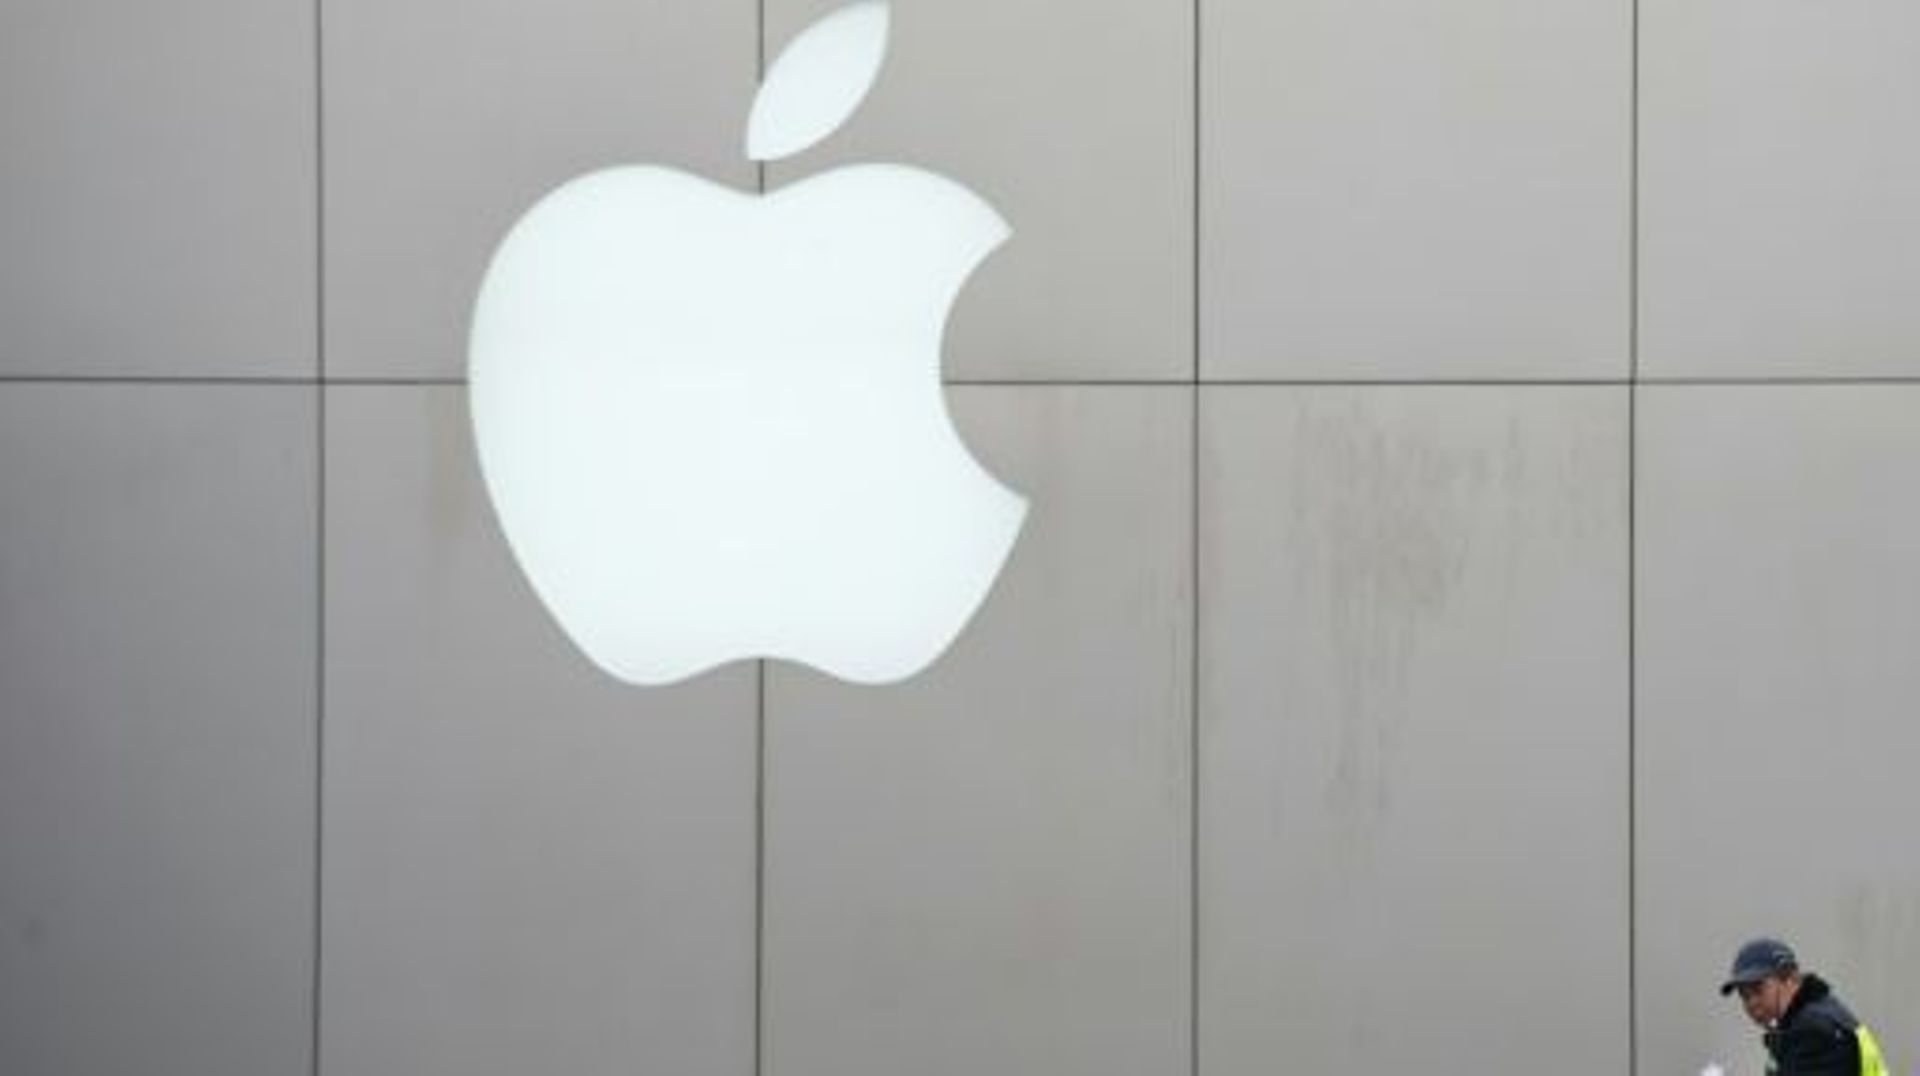 Le groupe informatique américain Apple a fait état jeudi à la mi-journée de problèmes techniques sur toute une série de ses services en ligne, empêchant certains utilisateurs d'y accéder